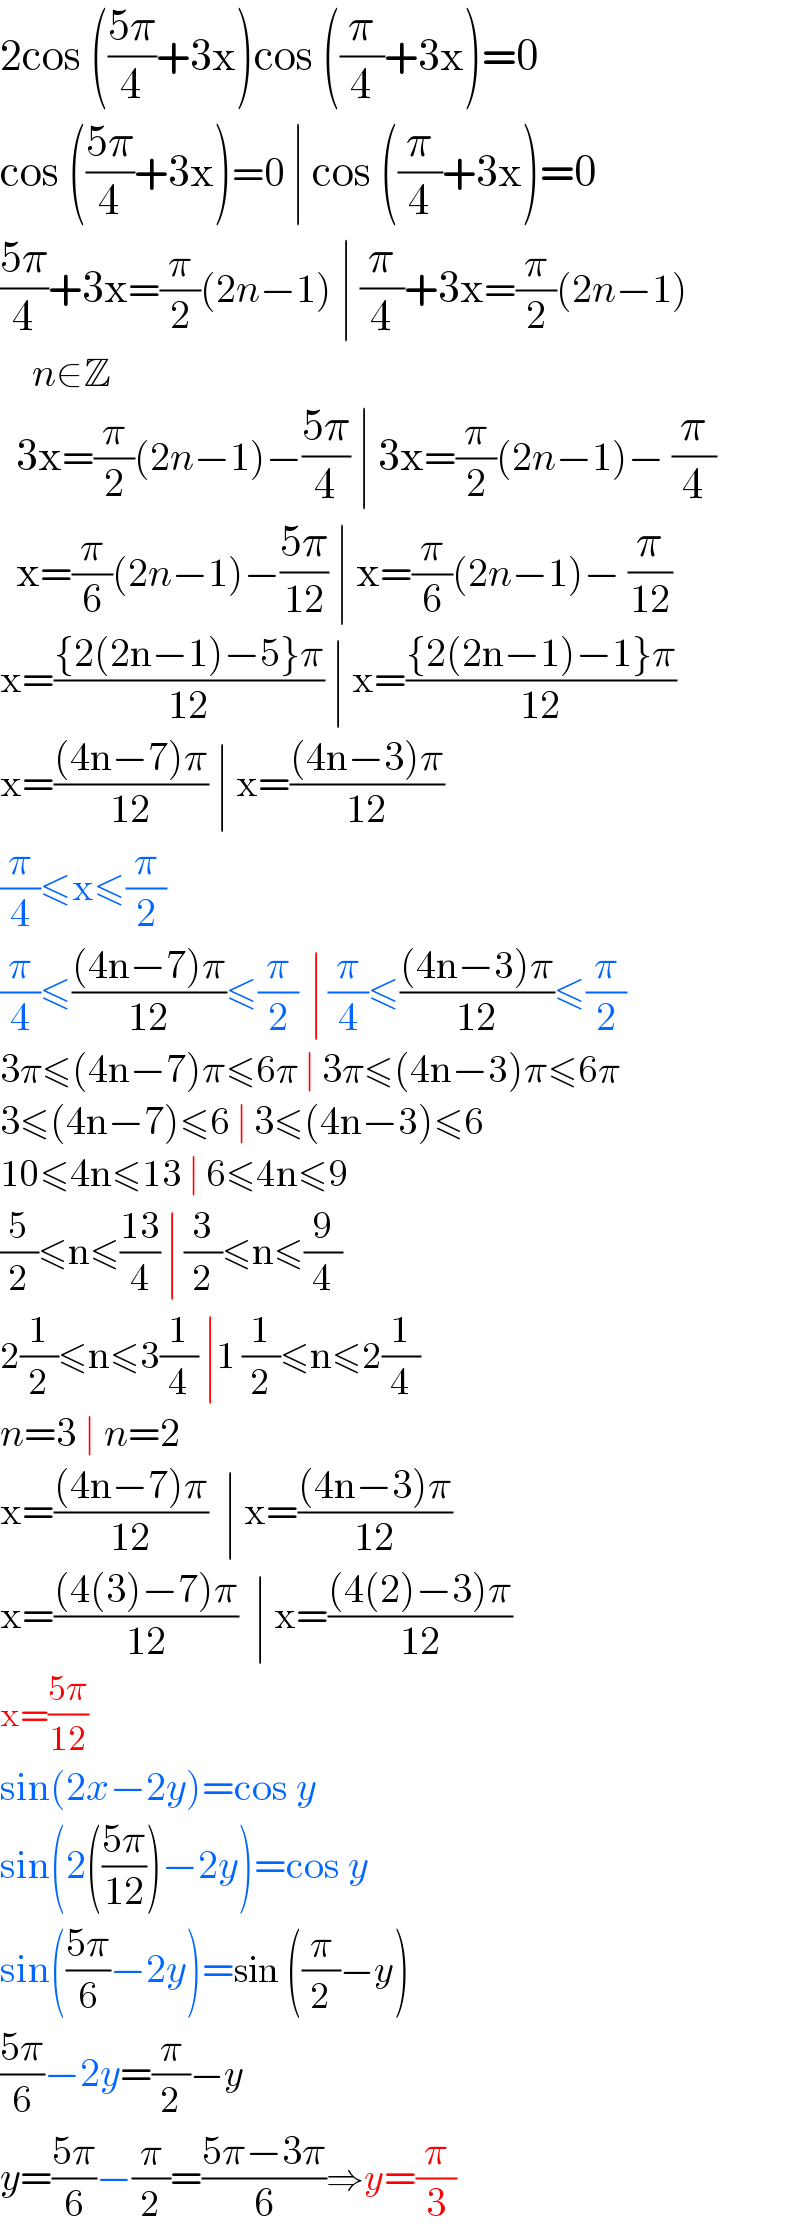 2cos (((5π)/4)+3x)cos ((π/4)+3x)=0  cos (((5π)/4)+3x)=0 ∣ cos ((π/4)+3x)=0  ((5π)/4)+3x=(π/2)(2n−1) ∣ (π/4)+3x=(π/2)(2n−1)      n∈Z    3x=(π/2)(2n−1)−((5π)/4) ∣ 3x=(π/2)(2n−1)− (π/4)    x=(π/6)(2n−1)−((5π)/(12)) ∣ x=(π/6)(2n−1)− (π/(12))  x=(({2(2n−1)−5}π)/(12)) ∣ x=(({2(2n−1)−1}π)/(12))  x=(((4n−7)π)/(12)) ∣ x=(((4n−3)π)/(12))  (π/4)≤x≤(π/2)  (π/4)≤(((4n−7)π)/(12))≤(π/2)  ∣ (π/4)≤(((4n−3)π)/(12))≤(π/2)  3π≤(4n−7)π≤6π ∣ 3π≤(4n−3)π≤6π  3≤(4n−7)≤6 ∣ 3≤(4n−3)≤6  10≤4n≤13 ∣ 6≤4n≤9  (5/2)≤n≤((13)/4) ∣ (3/2)≤n≤(9/4)  2(1/2)≤n≤3(1/4) ∣1 (1/2)≤n≤2(1/4)  n=3 ∣ n=2  x=(((4n−7)π)/(12))  ∣ x=(((4n−3)π)/(12))  x=(((4(3)−7)π)/(12))  ∣ x=(((4(2)−3)π)/(12))  x=((5π)/(12))    sin(2x−2y)=cos y  sin(2(((5π)/(12)))−2y)=cos y  sin(((5π)/6)−2y)=sin ((π/2)−y)  ((5π)/6)−2y=(π/2)−y  y=((5π)/6)−(π/2)=((5π−3π)/6)⇒y=(π/3)  